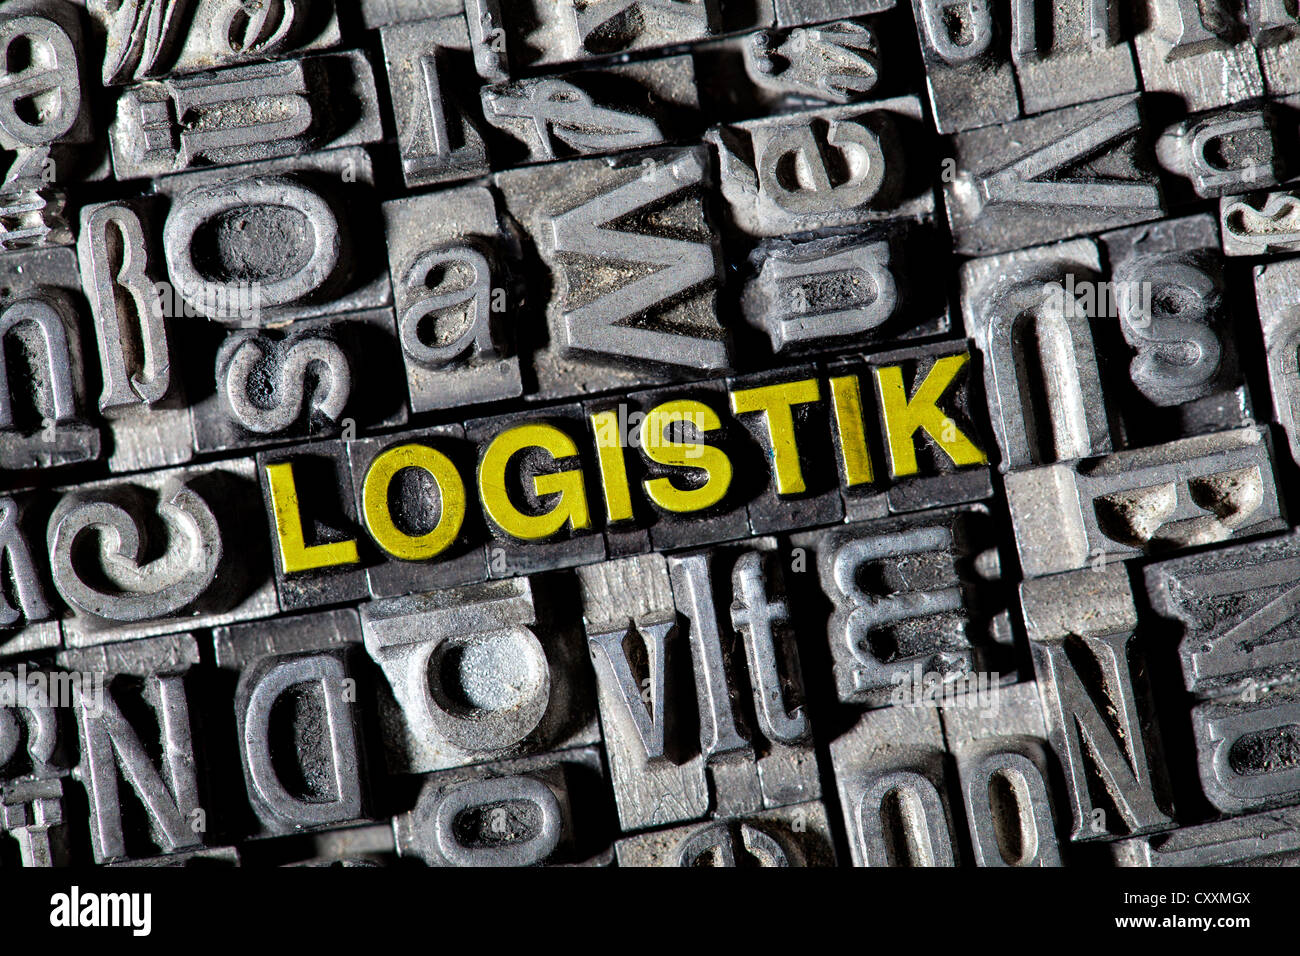 Antiguas letras de plomo que forman la palabra "Logistik', alemán de logística Foto de stock